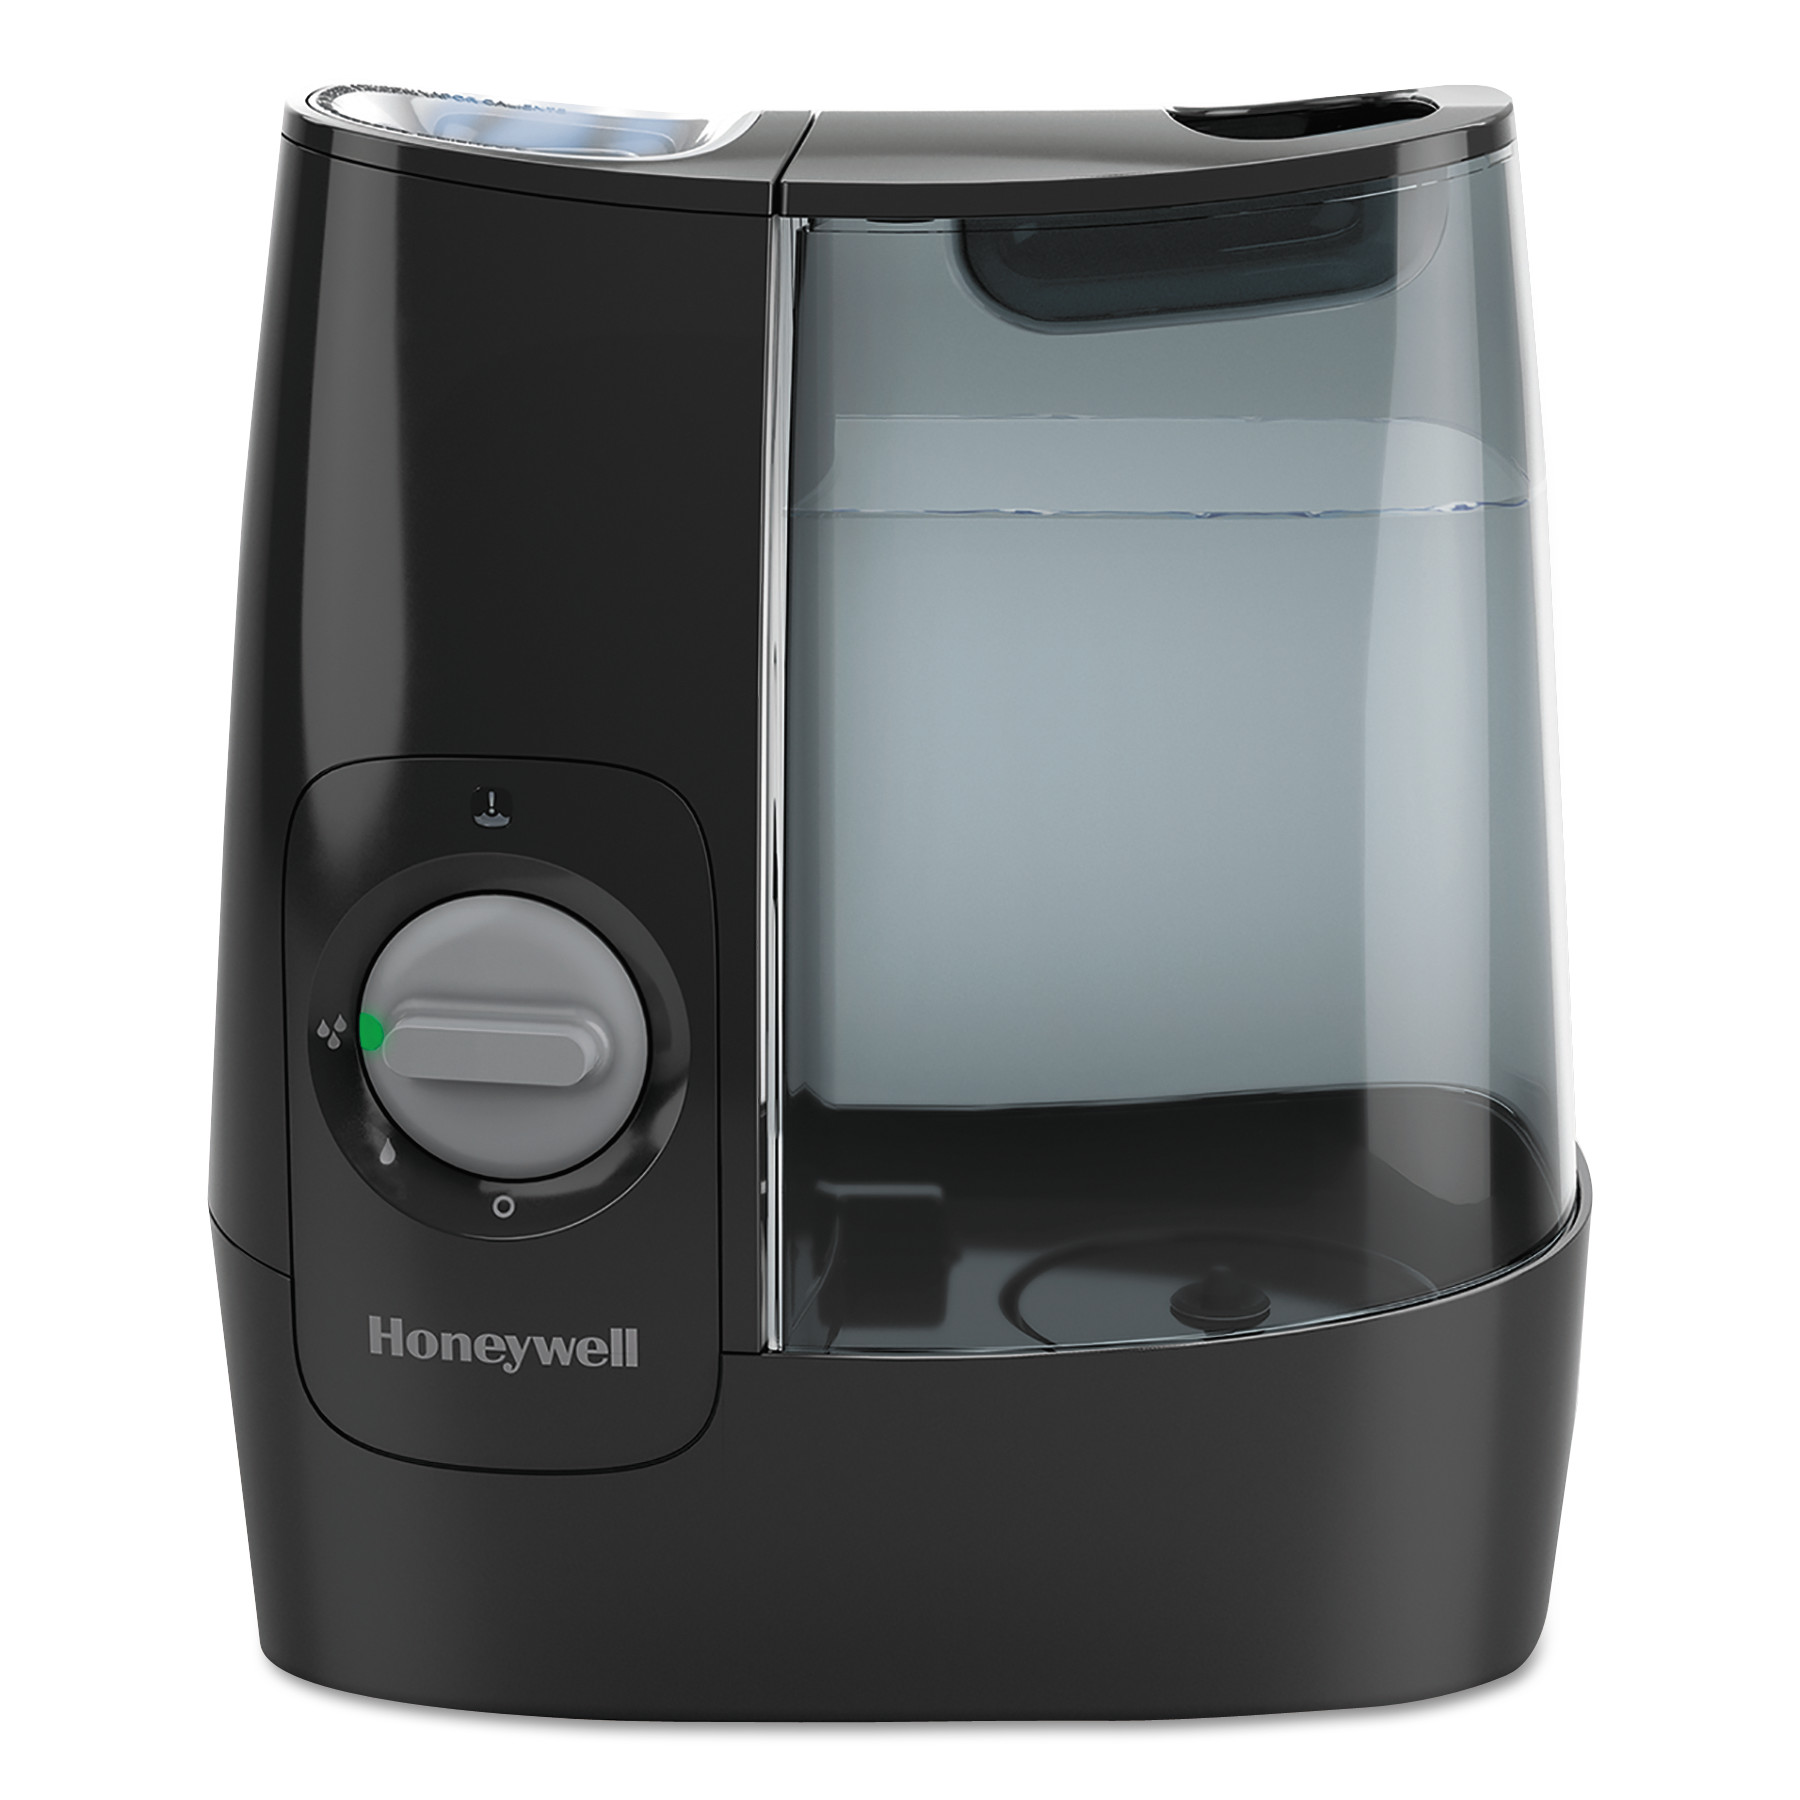  Honeywell HWL845B Filter Free Warm Mist Humidifier, 1 gal, 11.95w x 7.45d x 12.45h, Black (HWLHWM845B) 